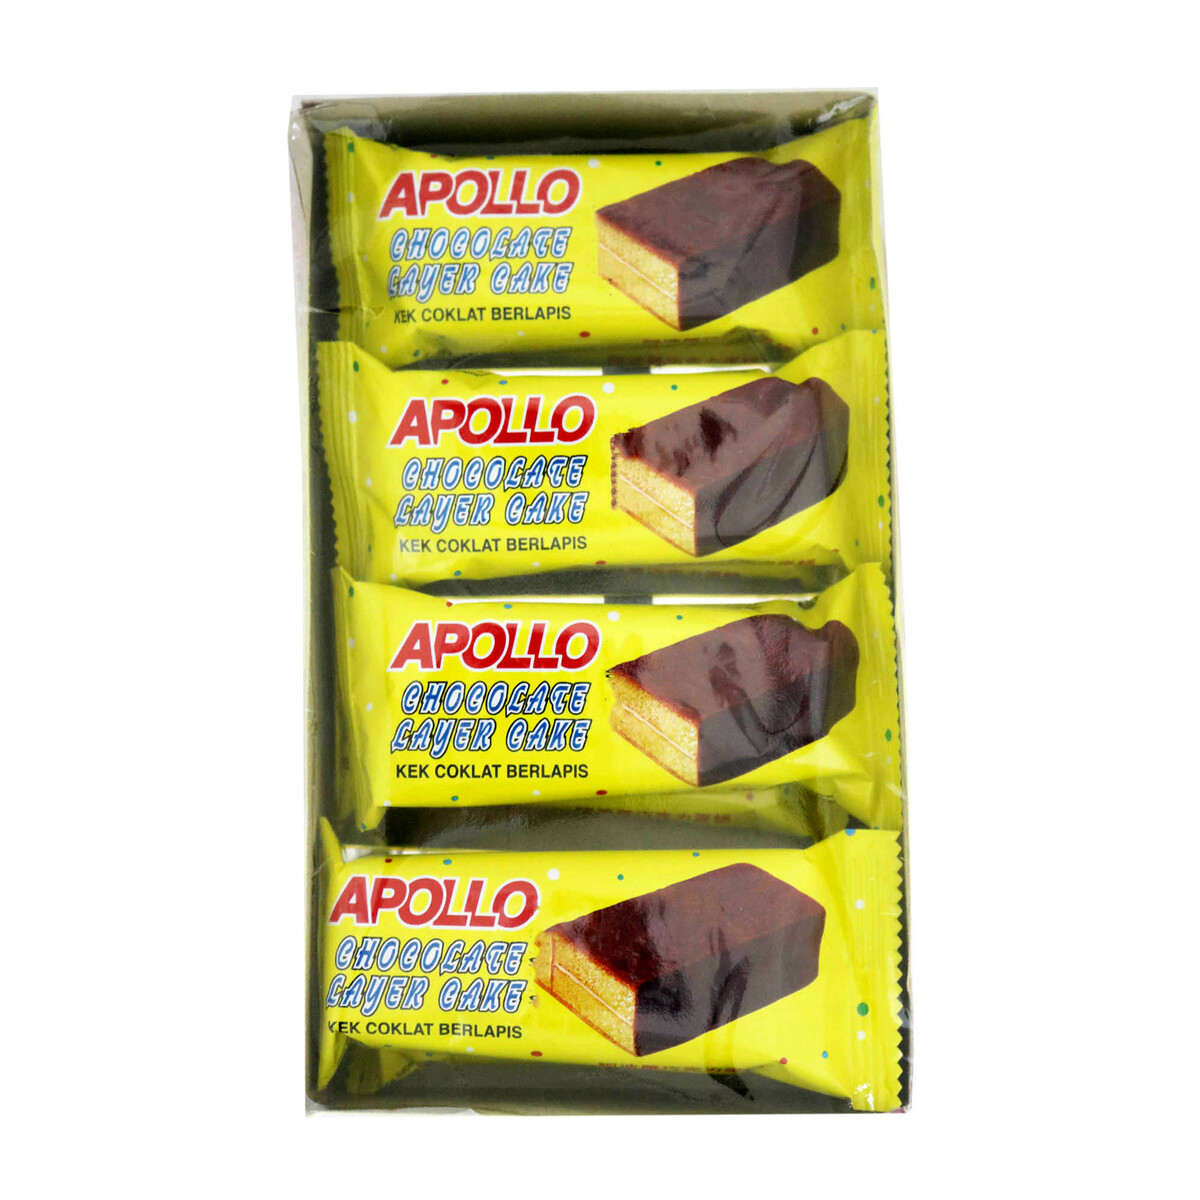 Apollo cake